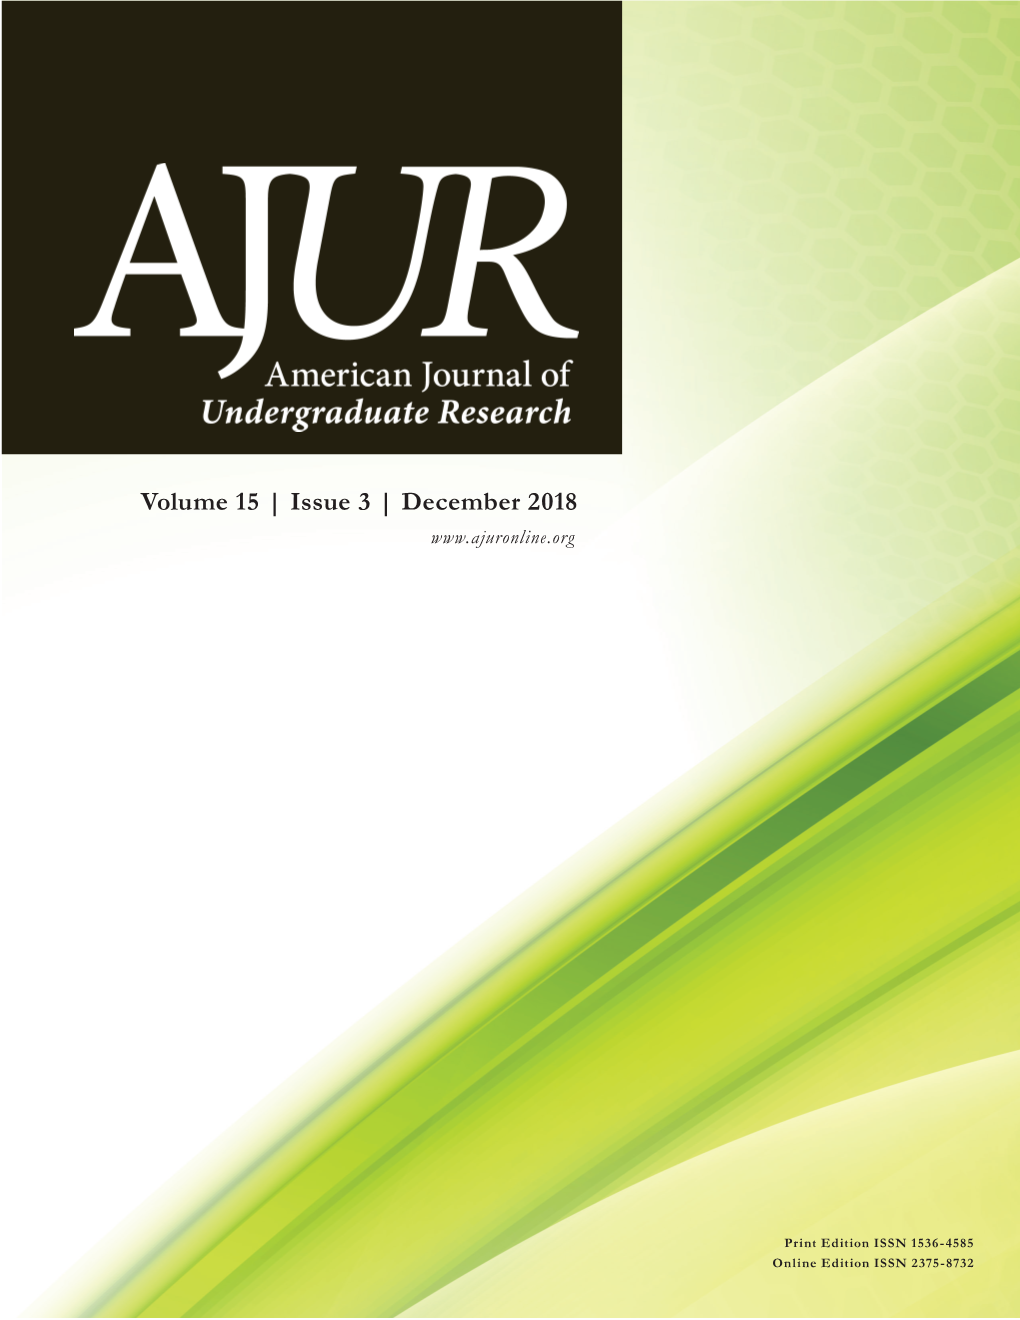 AJUR Volume 15 Issue 3 (December 2018)